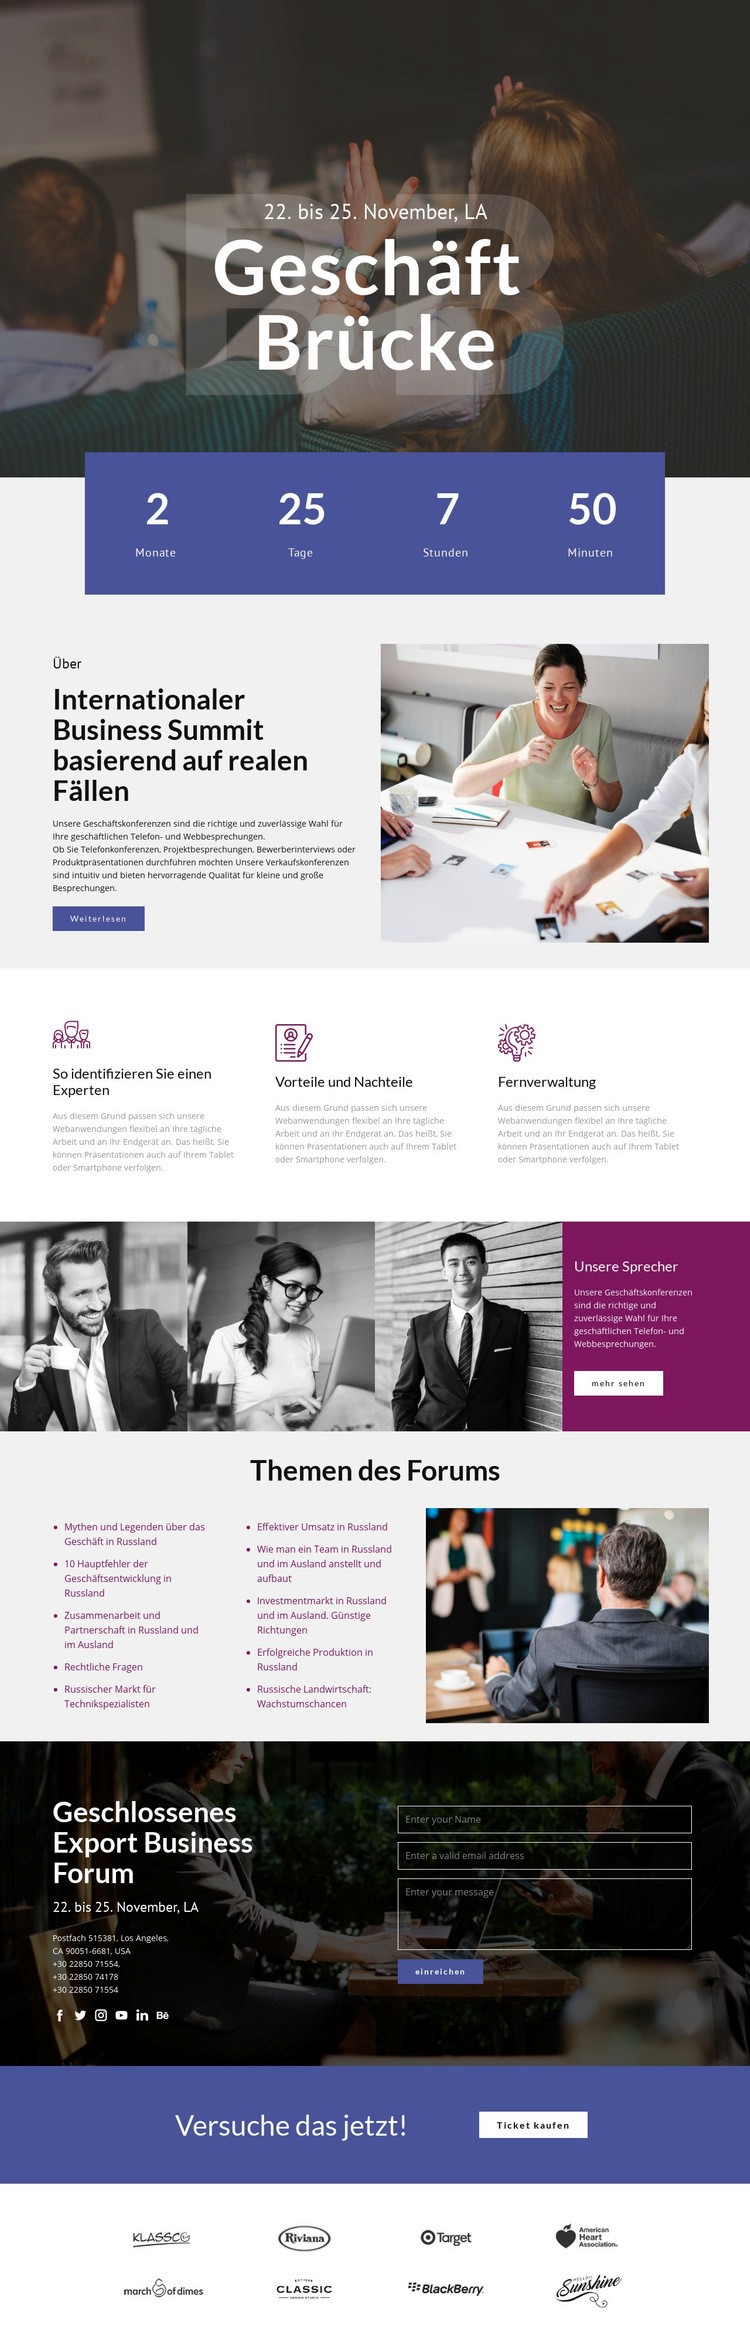 Geschäftsbrücke Website design